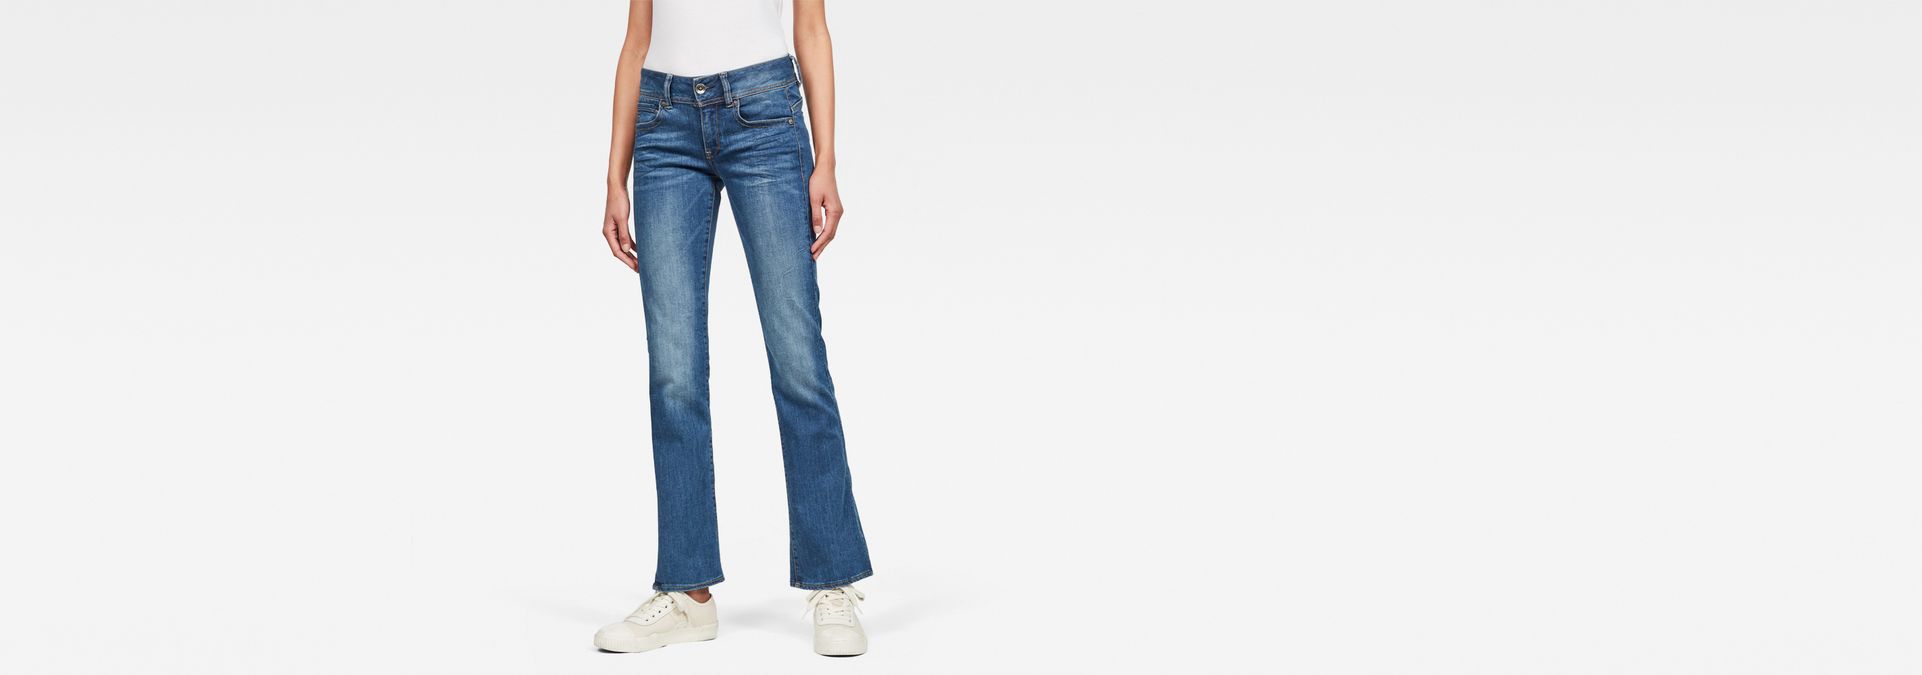 50819-6229 Jeans Jean G-Star RAW en coloris Bleu Femme Vêtements homme Jeans homme Jeans coupe droite 